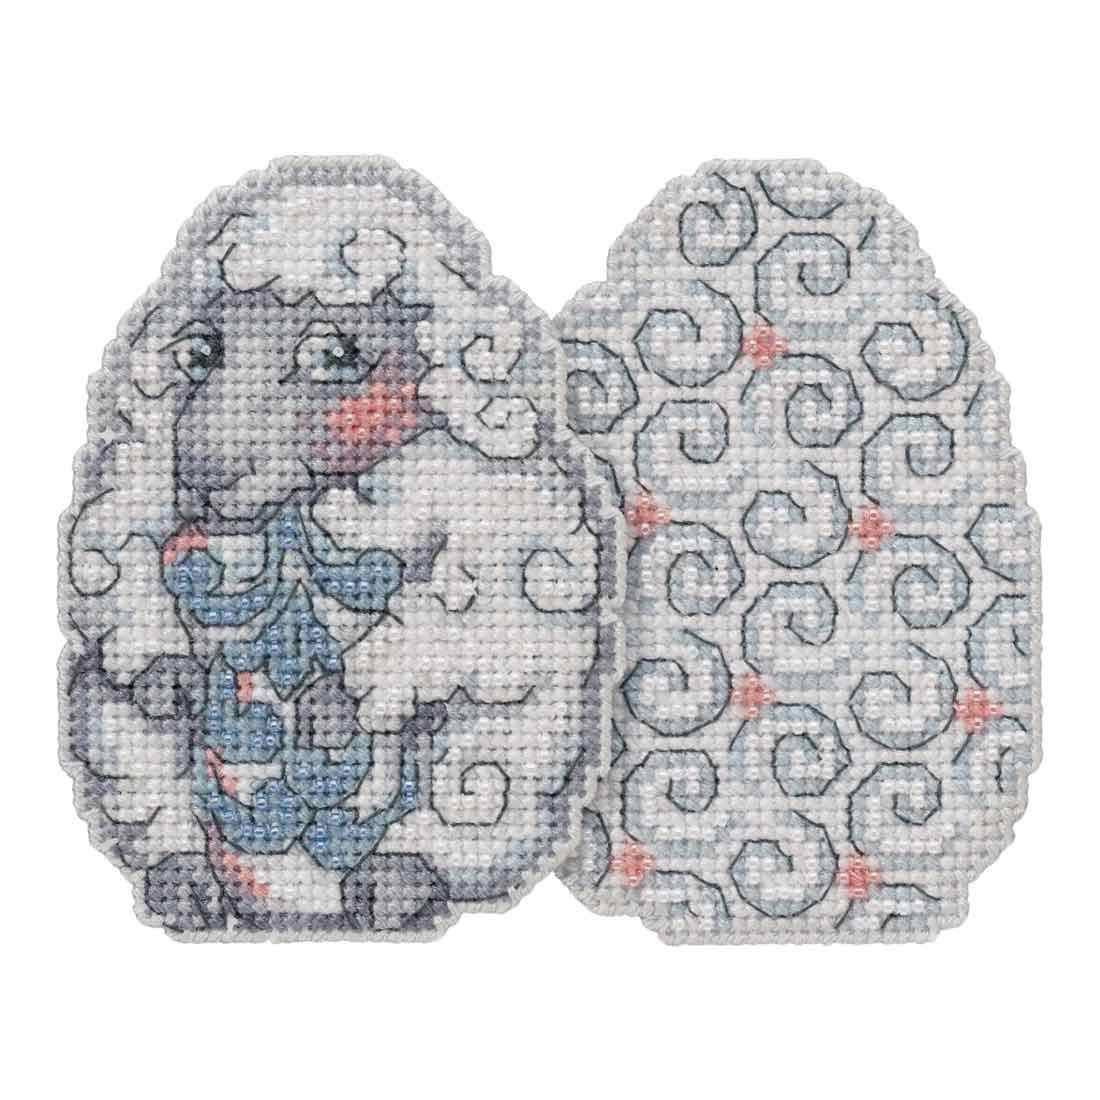 Mill Hill Sheep Egg Ornament Cross Stitch Kit